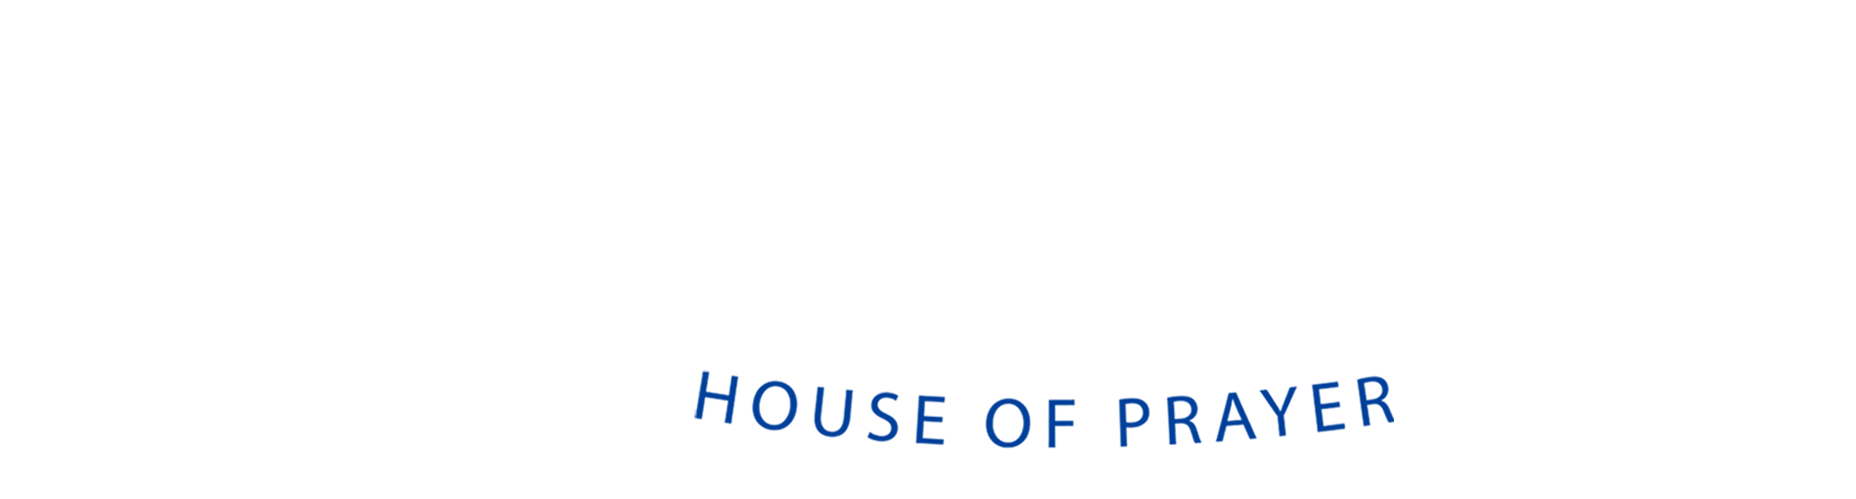 The Refuge House of Prayer